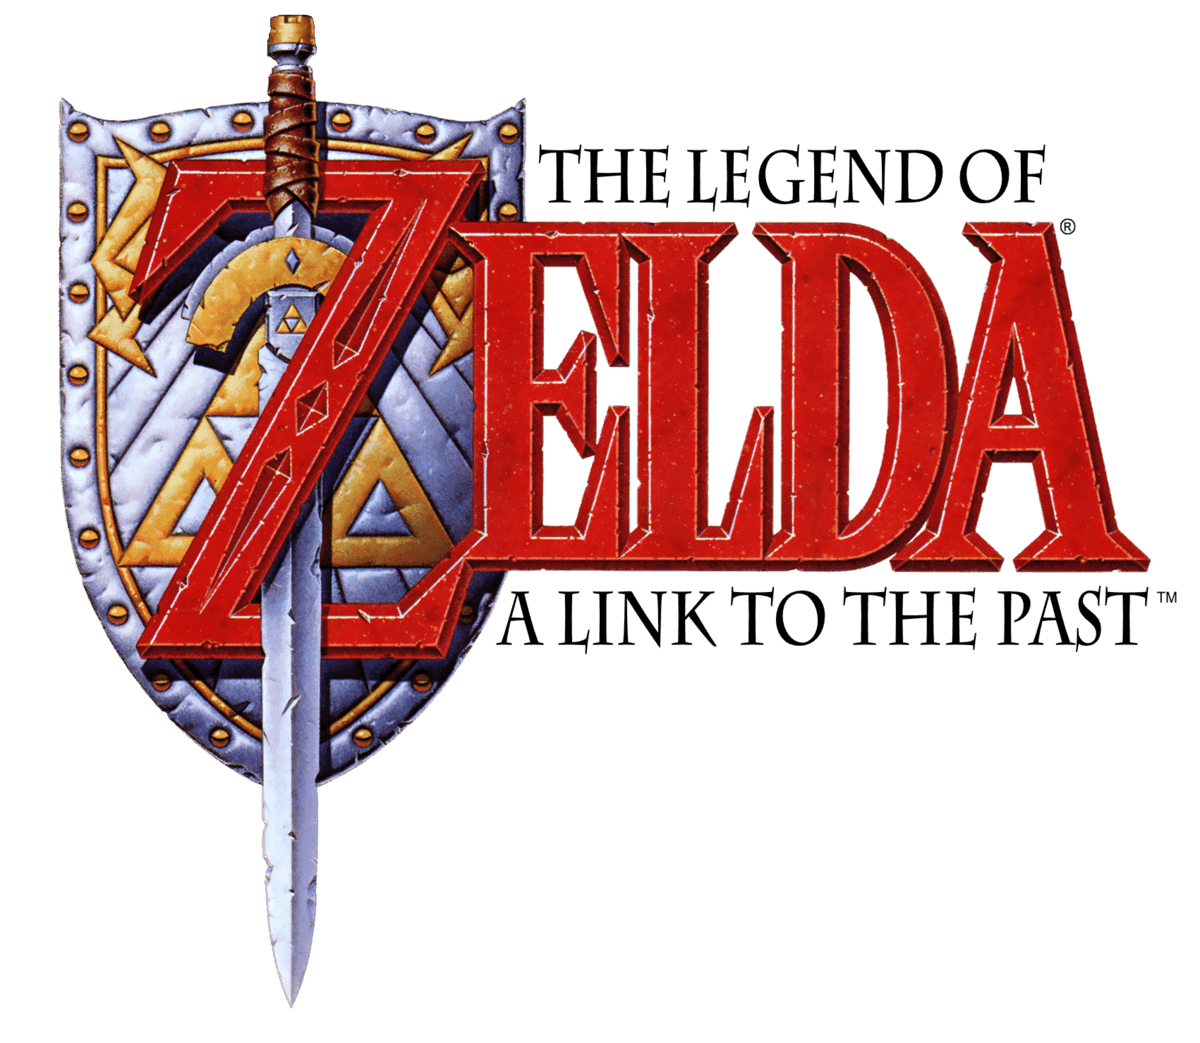 Link Zelda Clipart, Transparent PNG Clipart Images Free Download